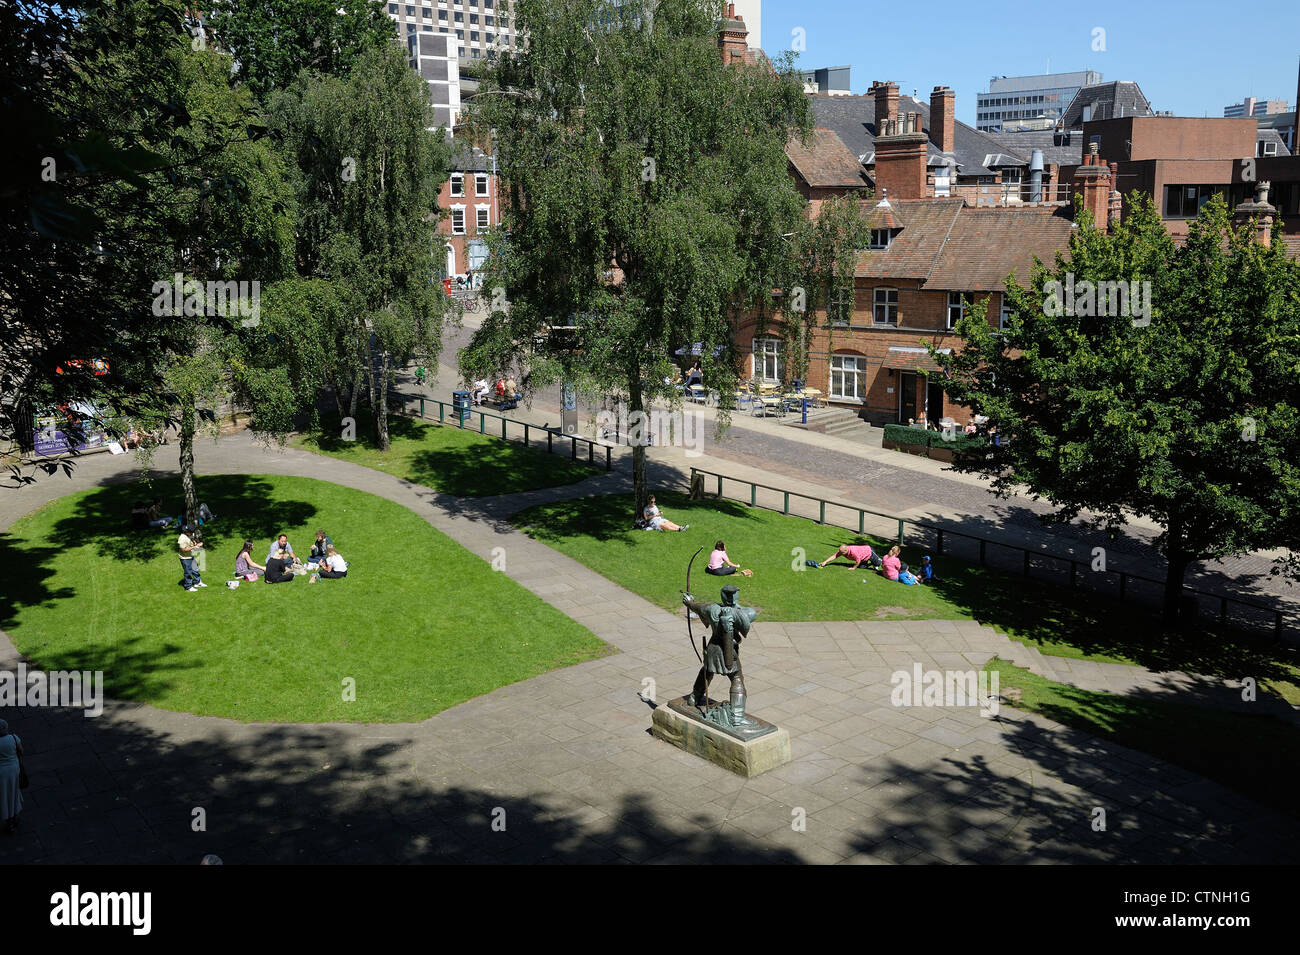 Statue de Robin des bois dans le parc du château de Nottingham England uk Banque D'Images